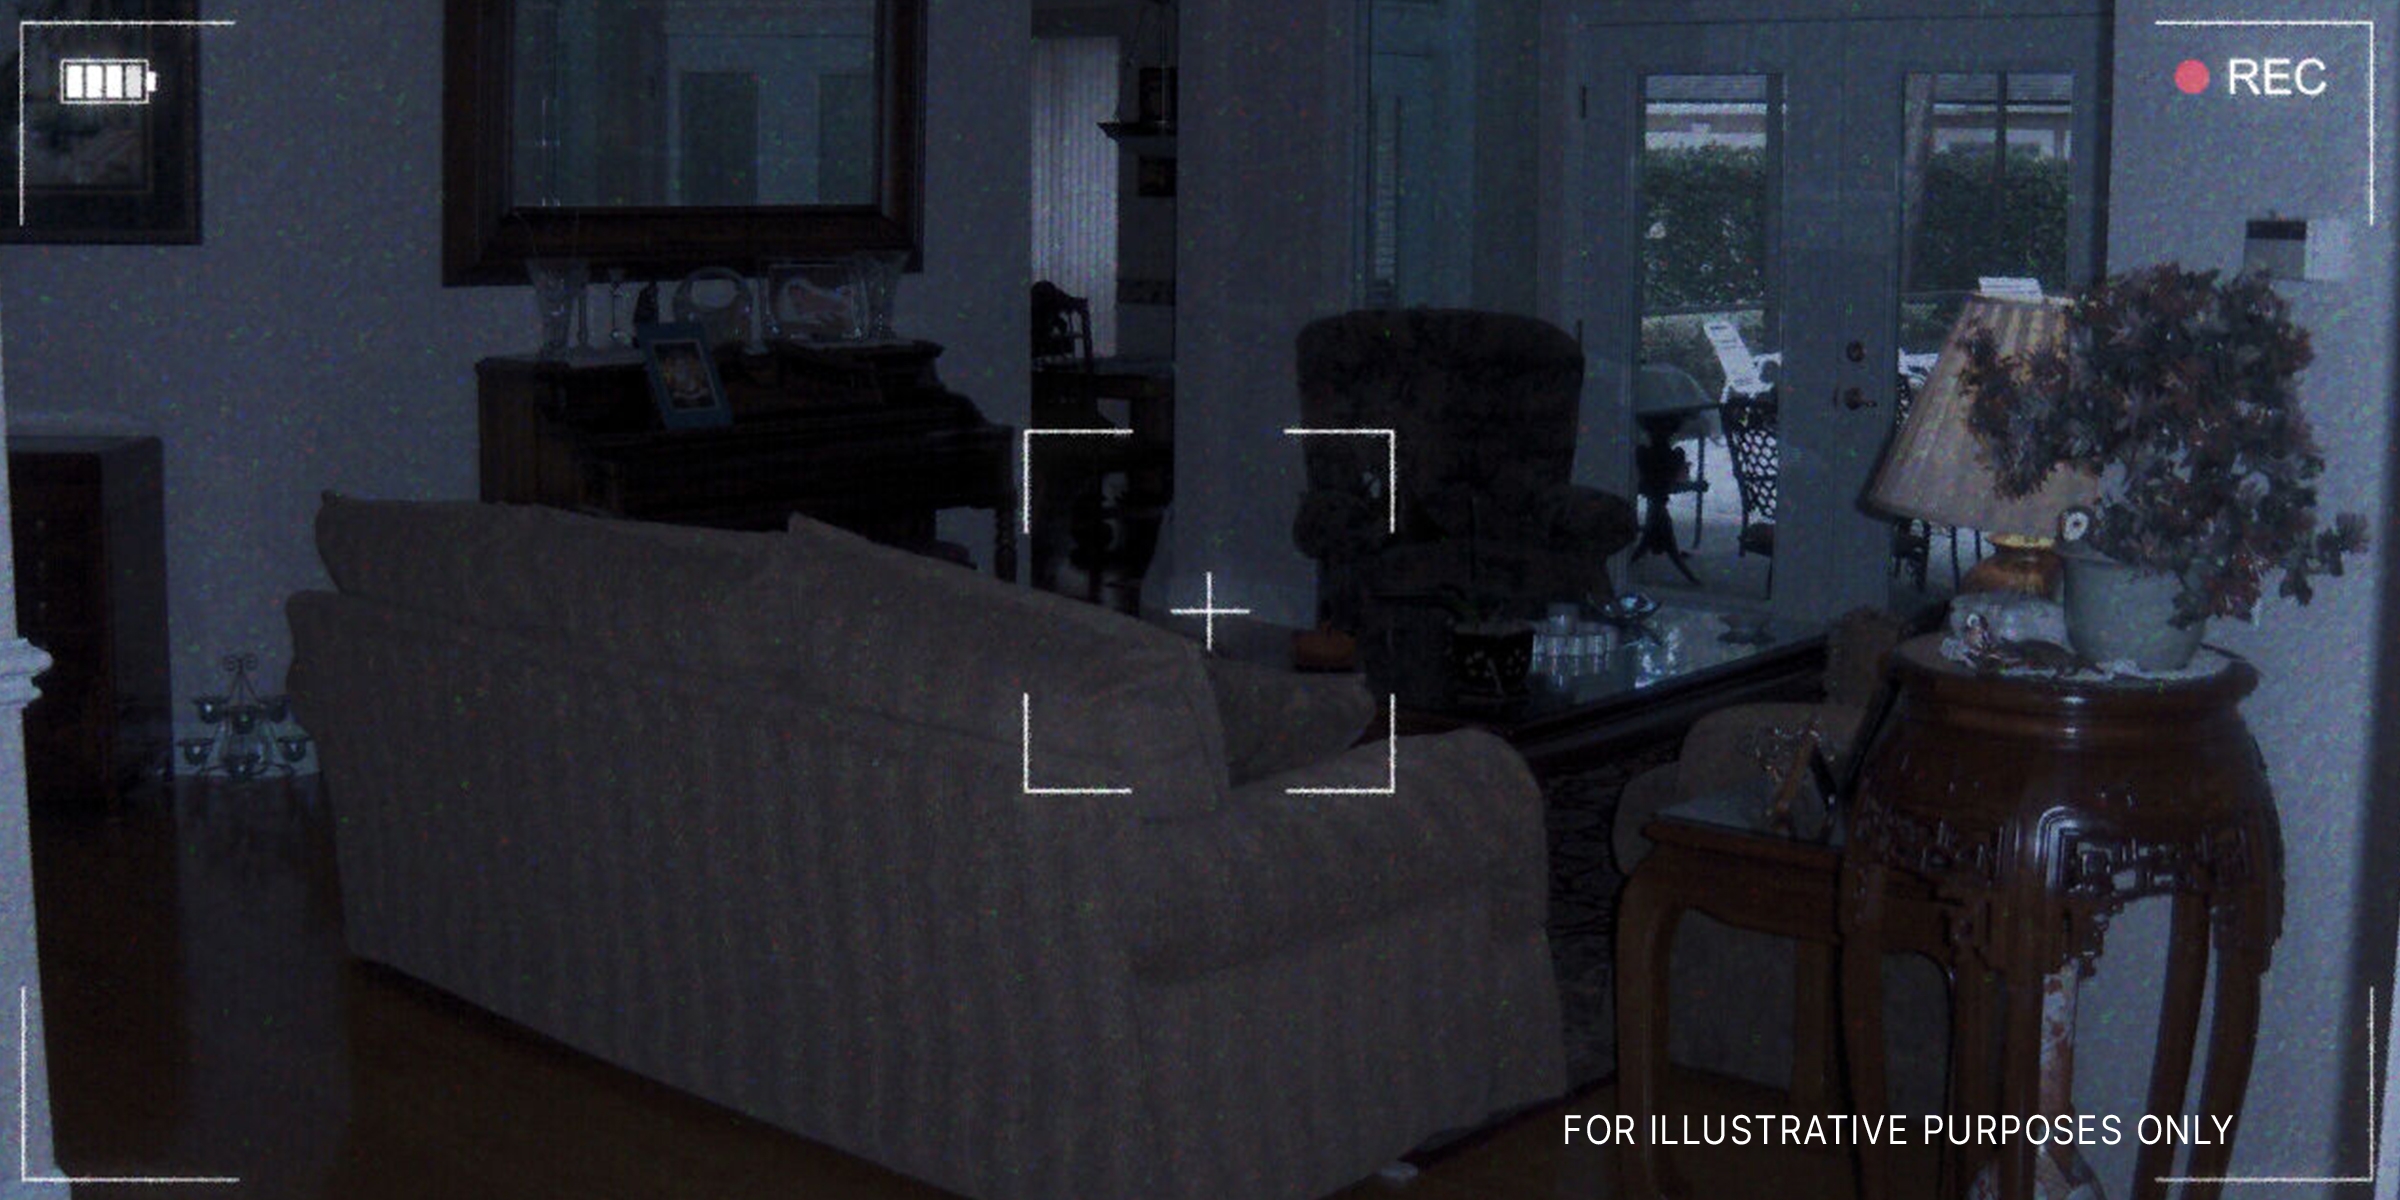 Still camera footage of a living room | Source: Flickr.com/Joe Shlabotnik/CC BY 2.0